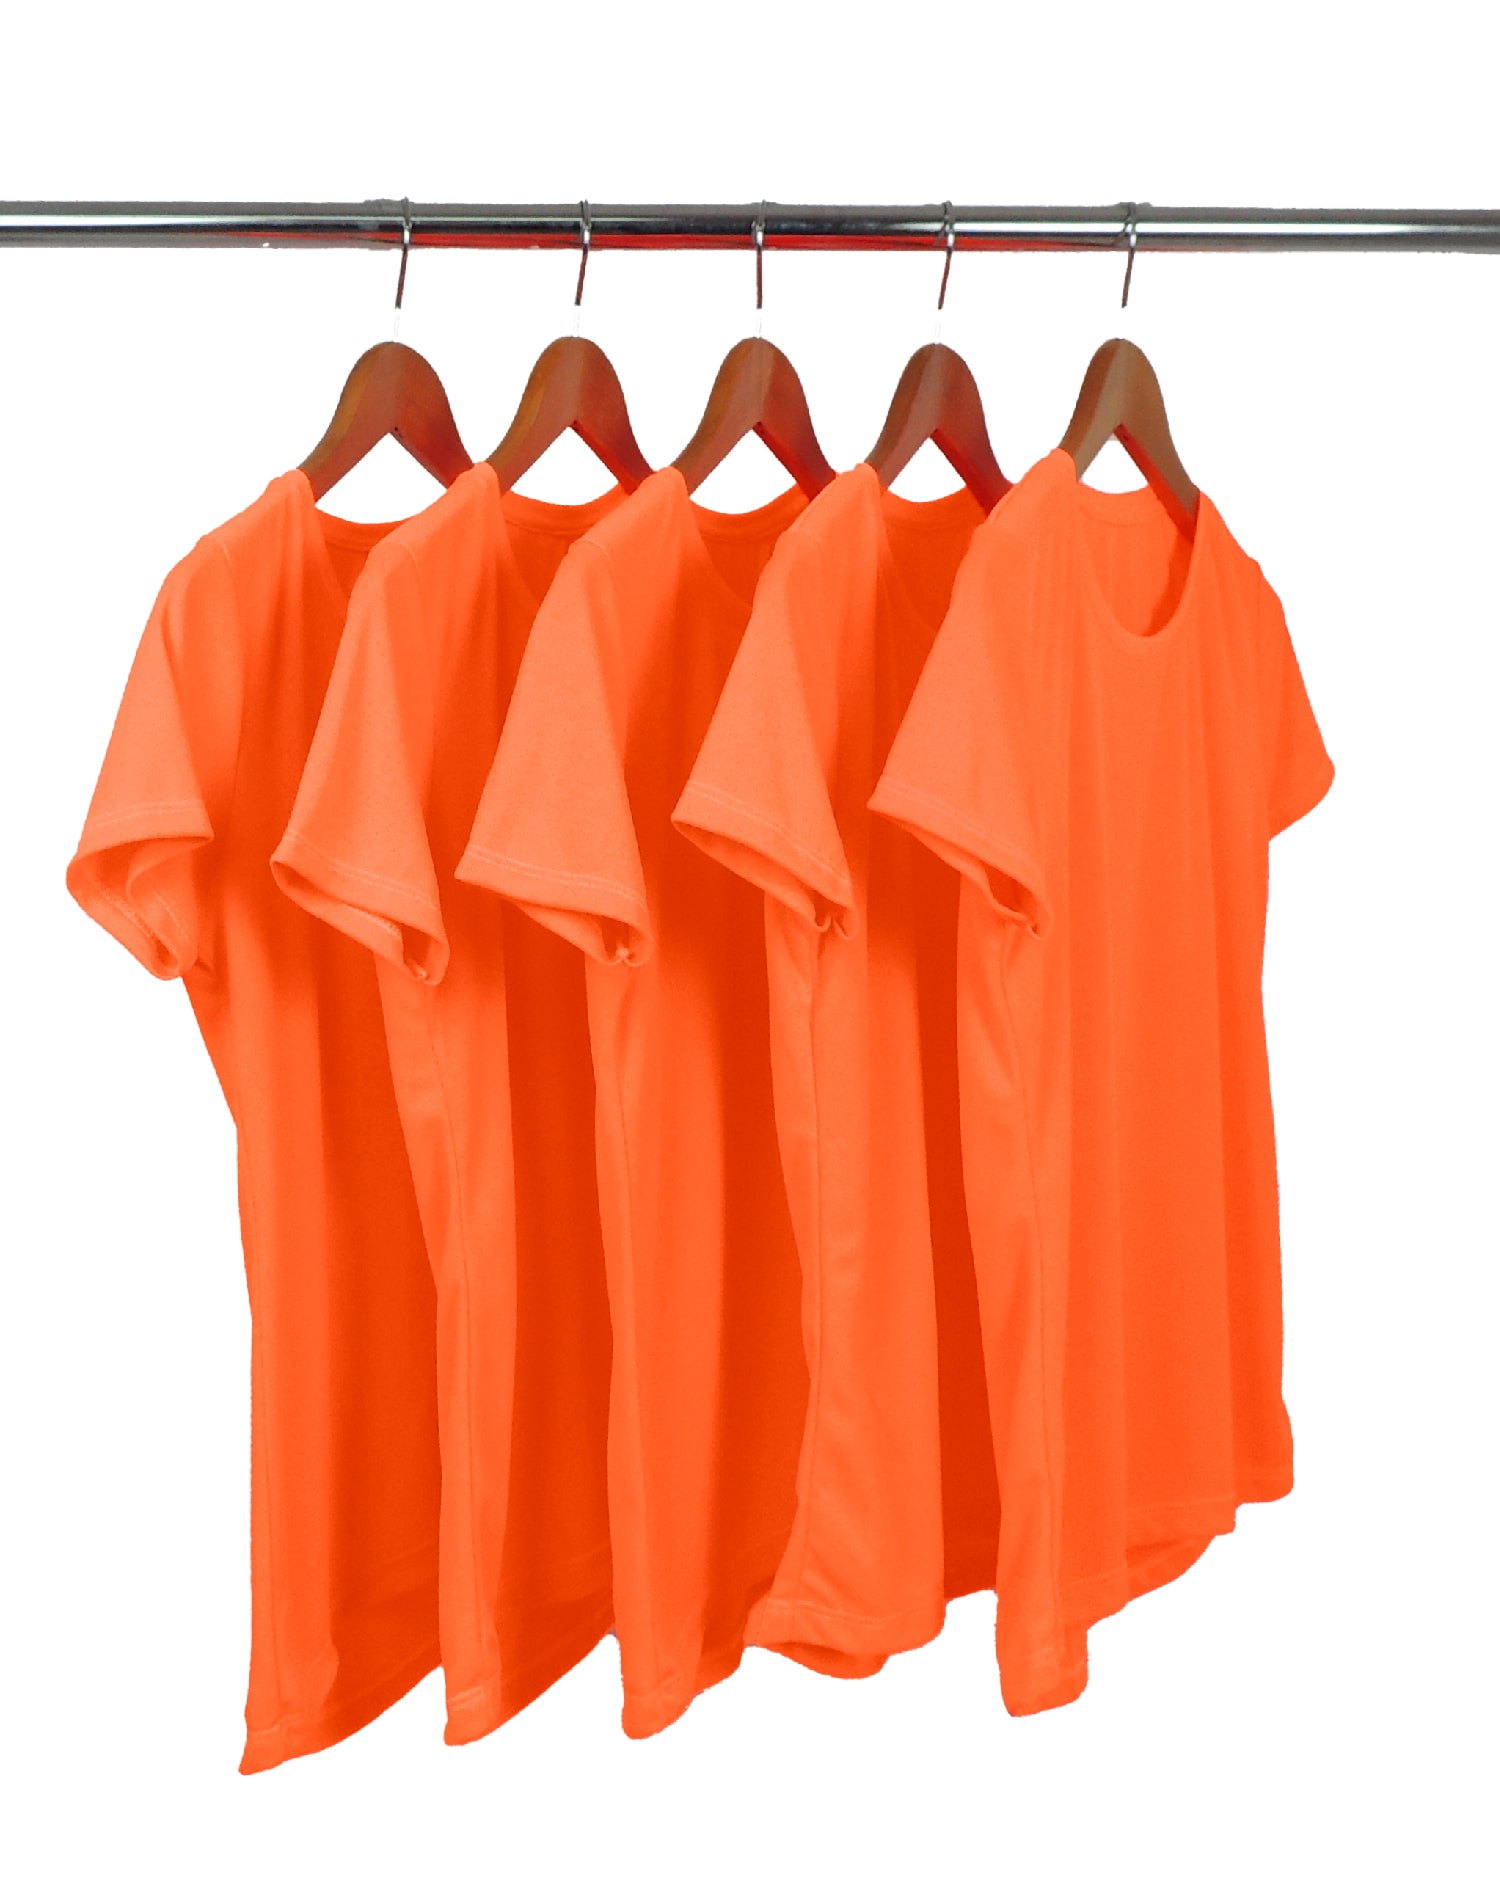 KIT 5 Camisetas Femininas Dry Fit Laranja Fluorescente Proteção UV 30+